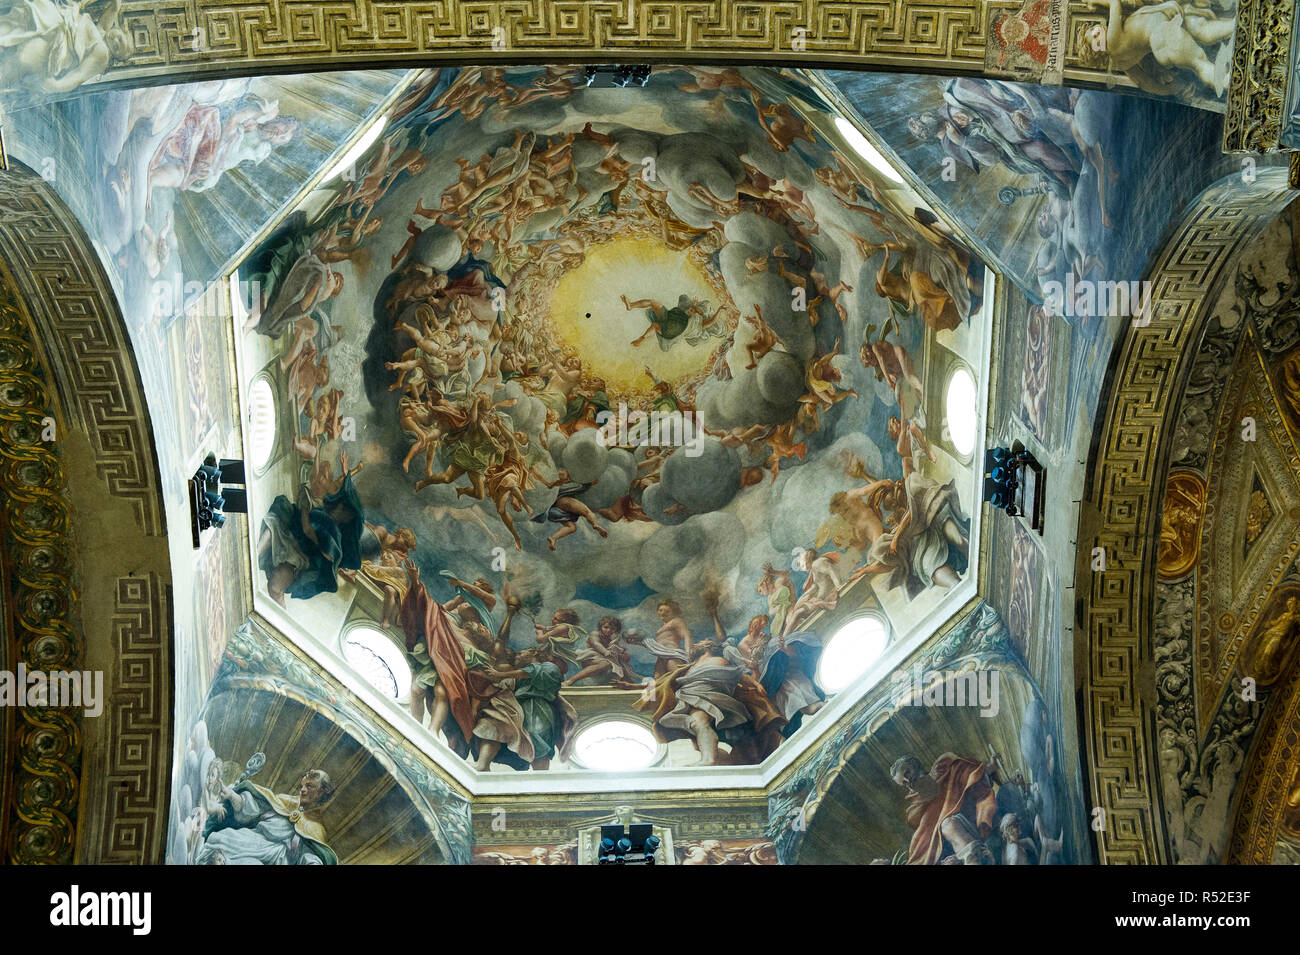 L'Italie, l'Emilie Romagne, Parme, la cathédrale Santa Maria Assunta, tirés de la coupole de l'Assomption de la Vierge peint par Simon Vouet Banque D'Images